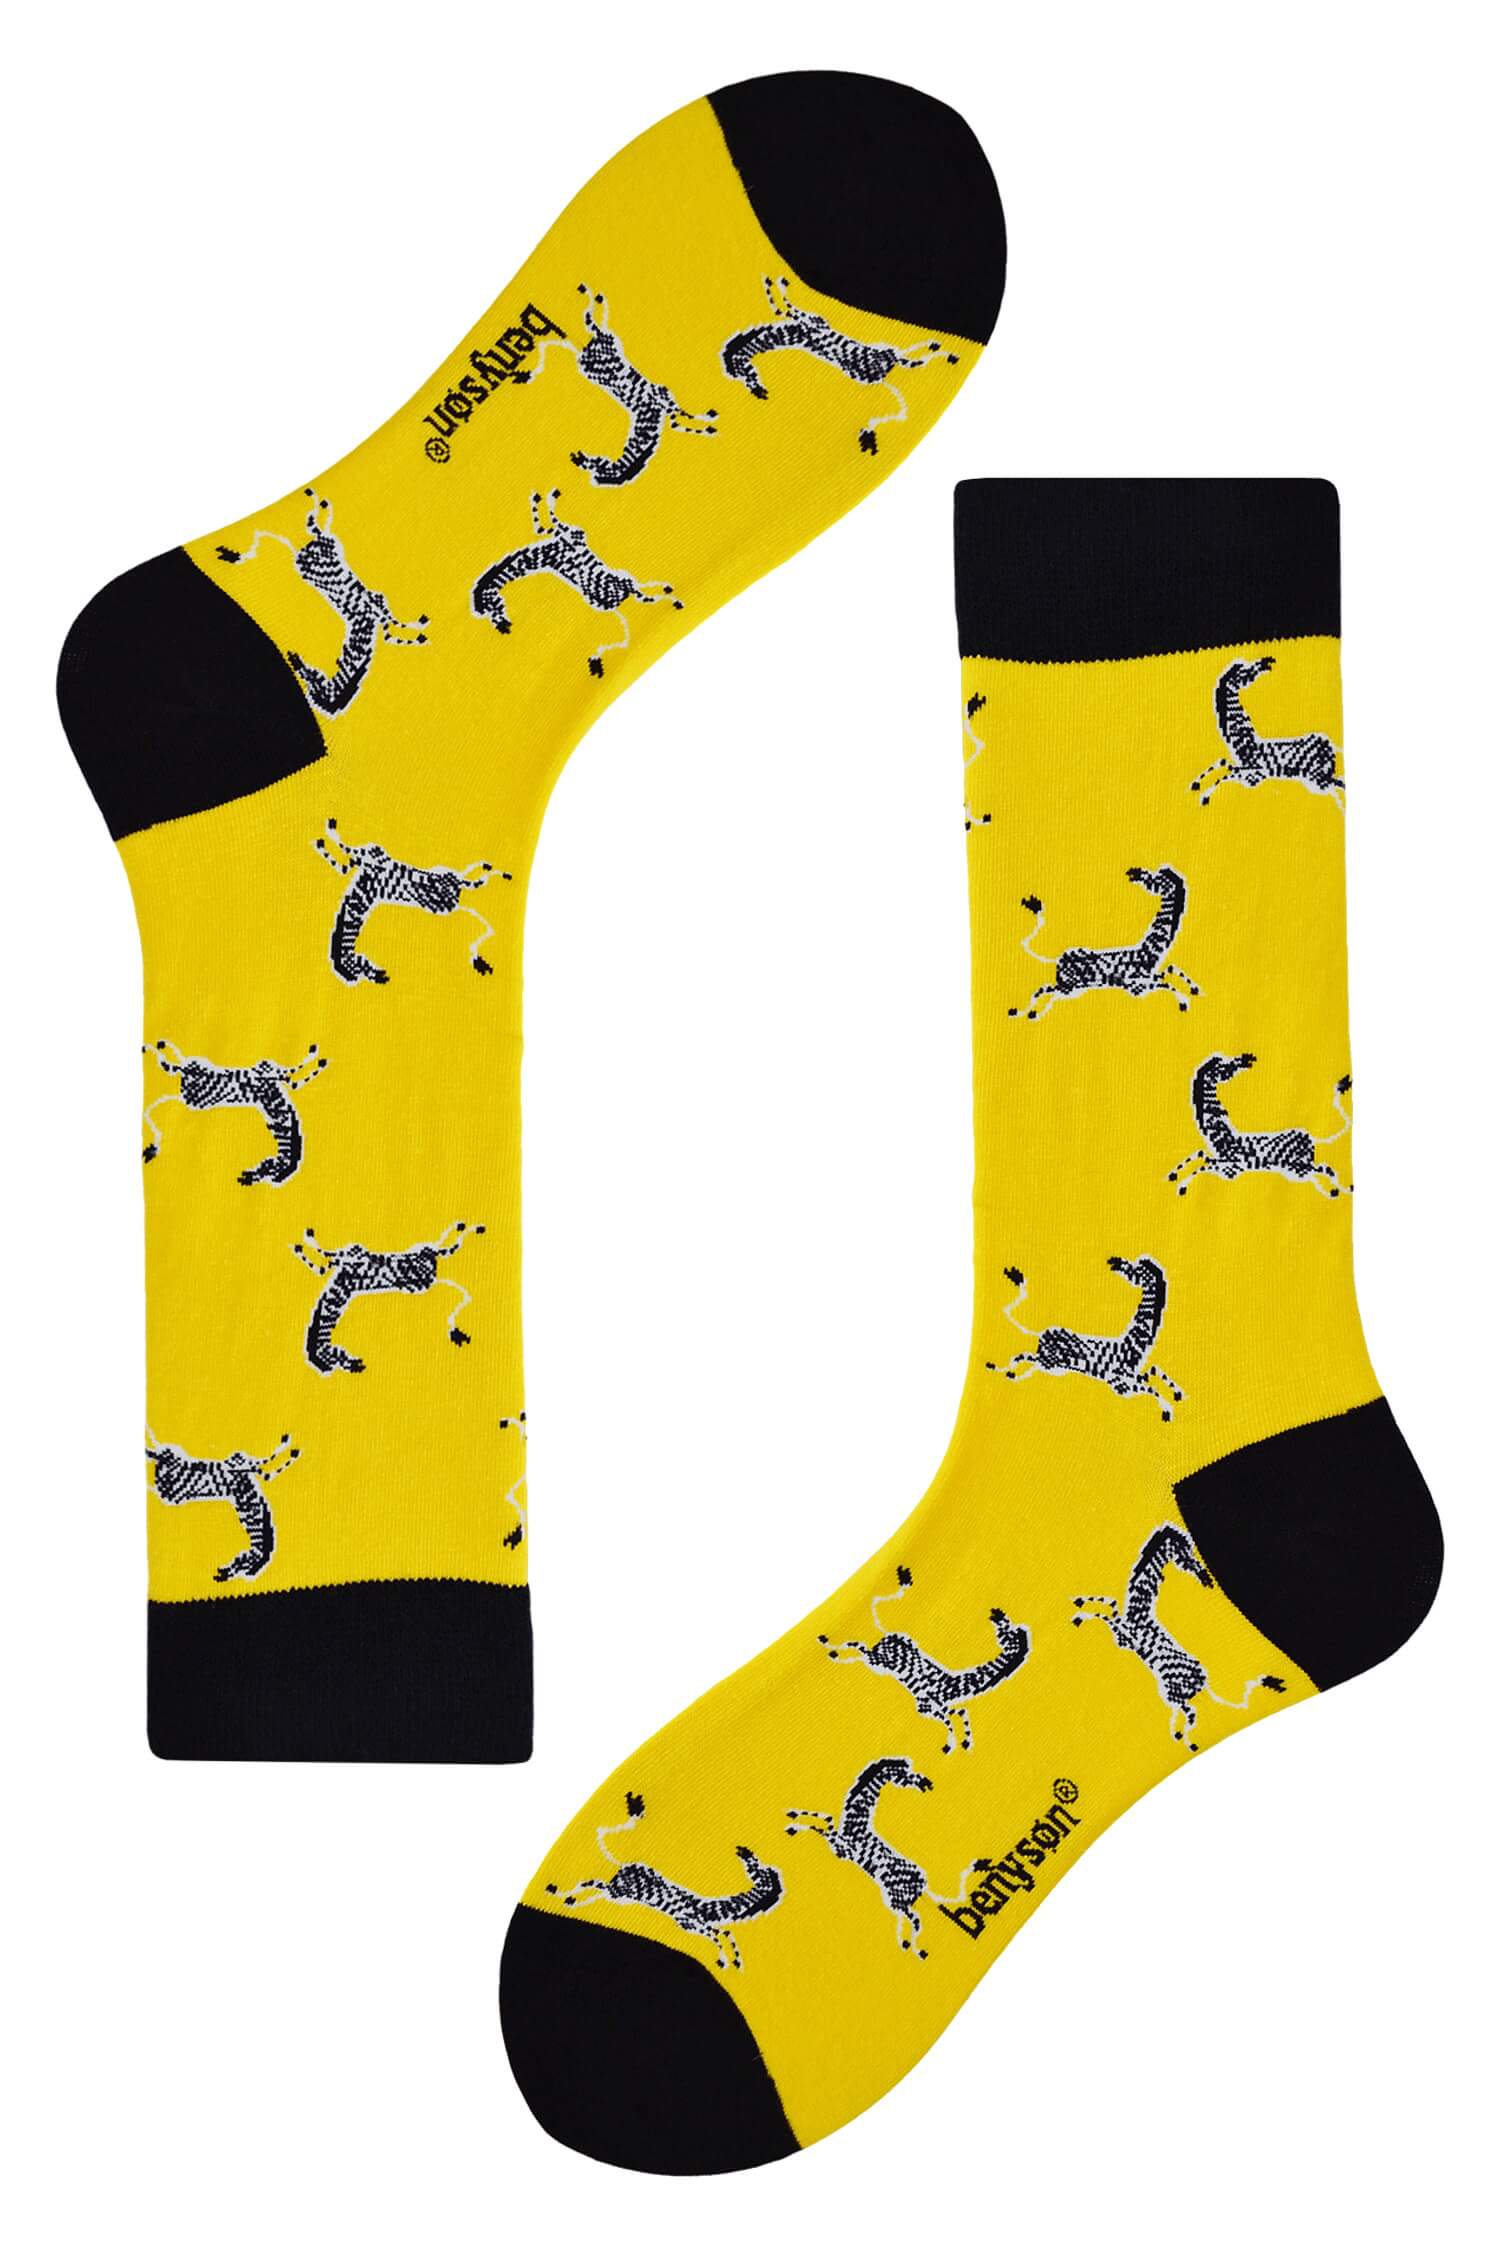 ZOO zebra barevné ponožky unisex 044 36-40 žlutá